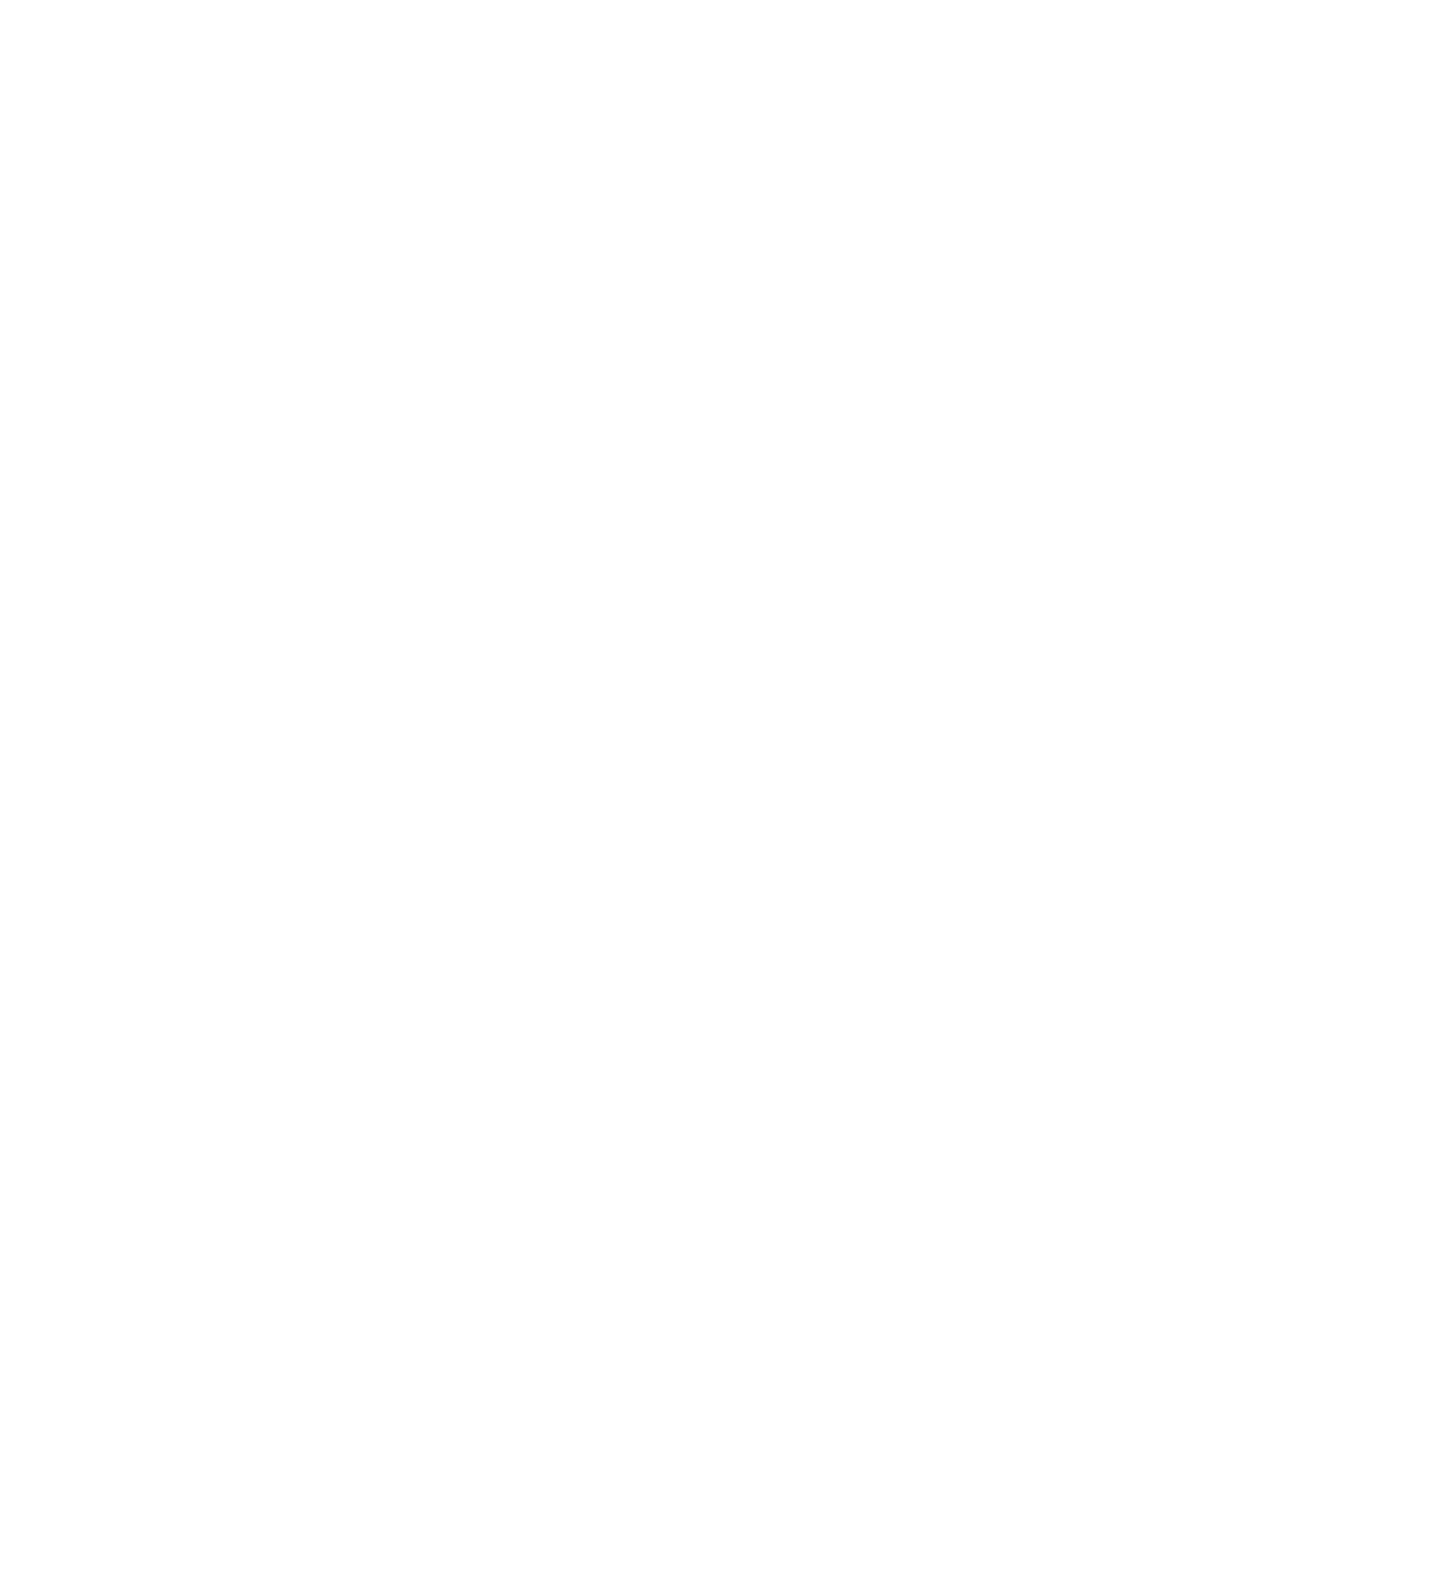 Apellis Pharmaceuticals logo pour fonds sombres (PNG transparent)